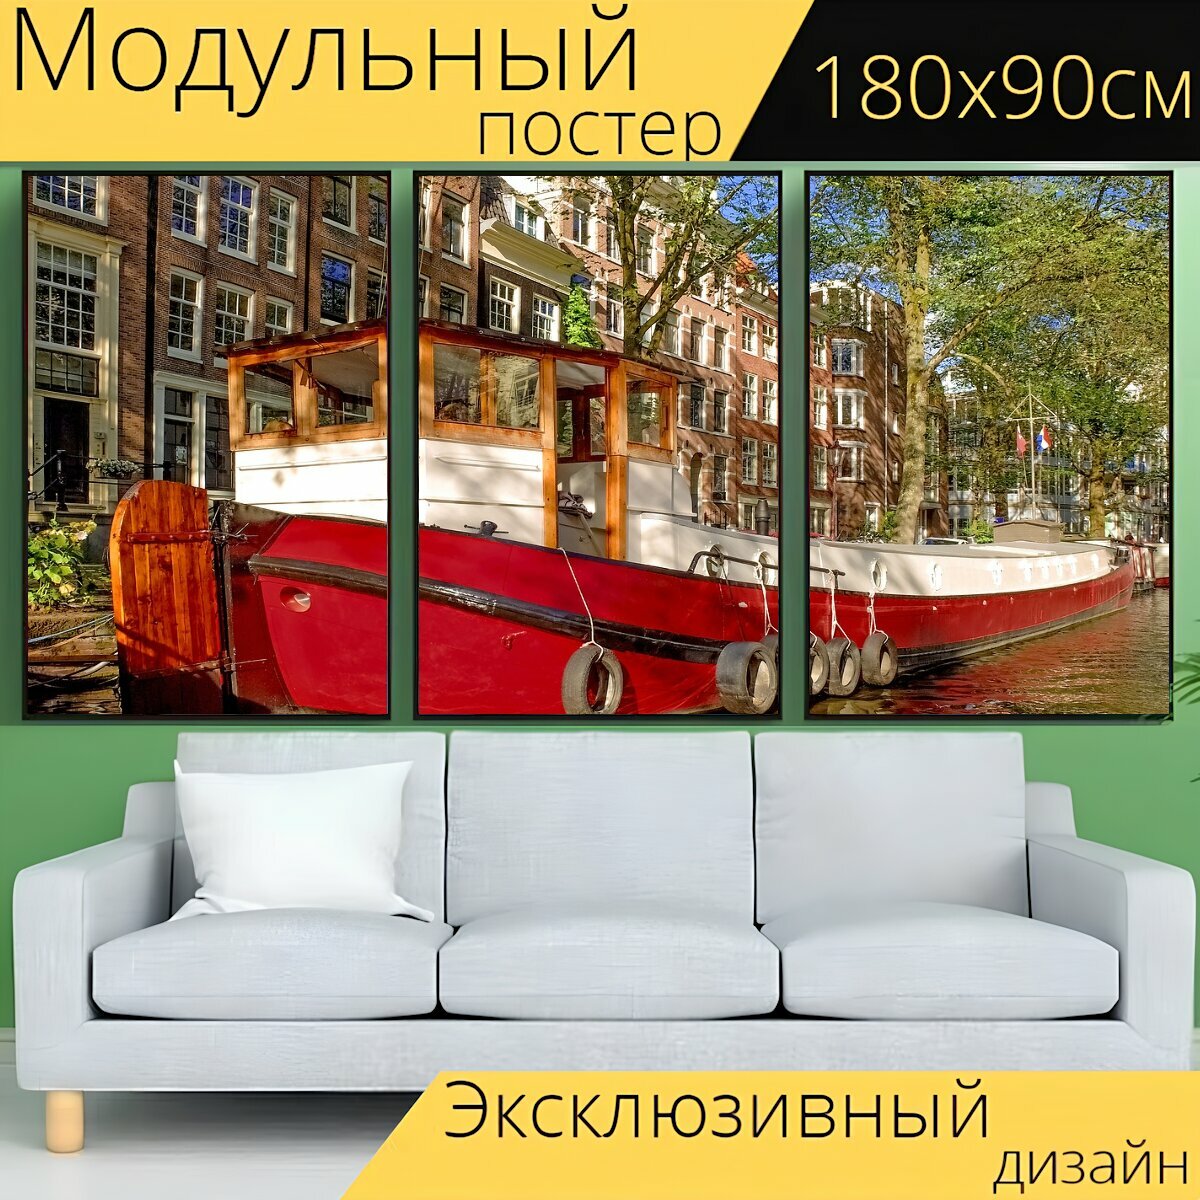 Модульный постер "Баржа, плавучий дом, лодка" 180 x 90 см. для интерьера